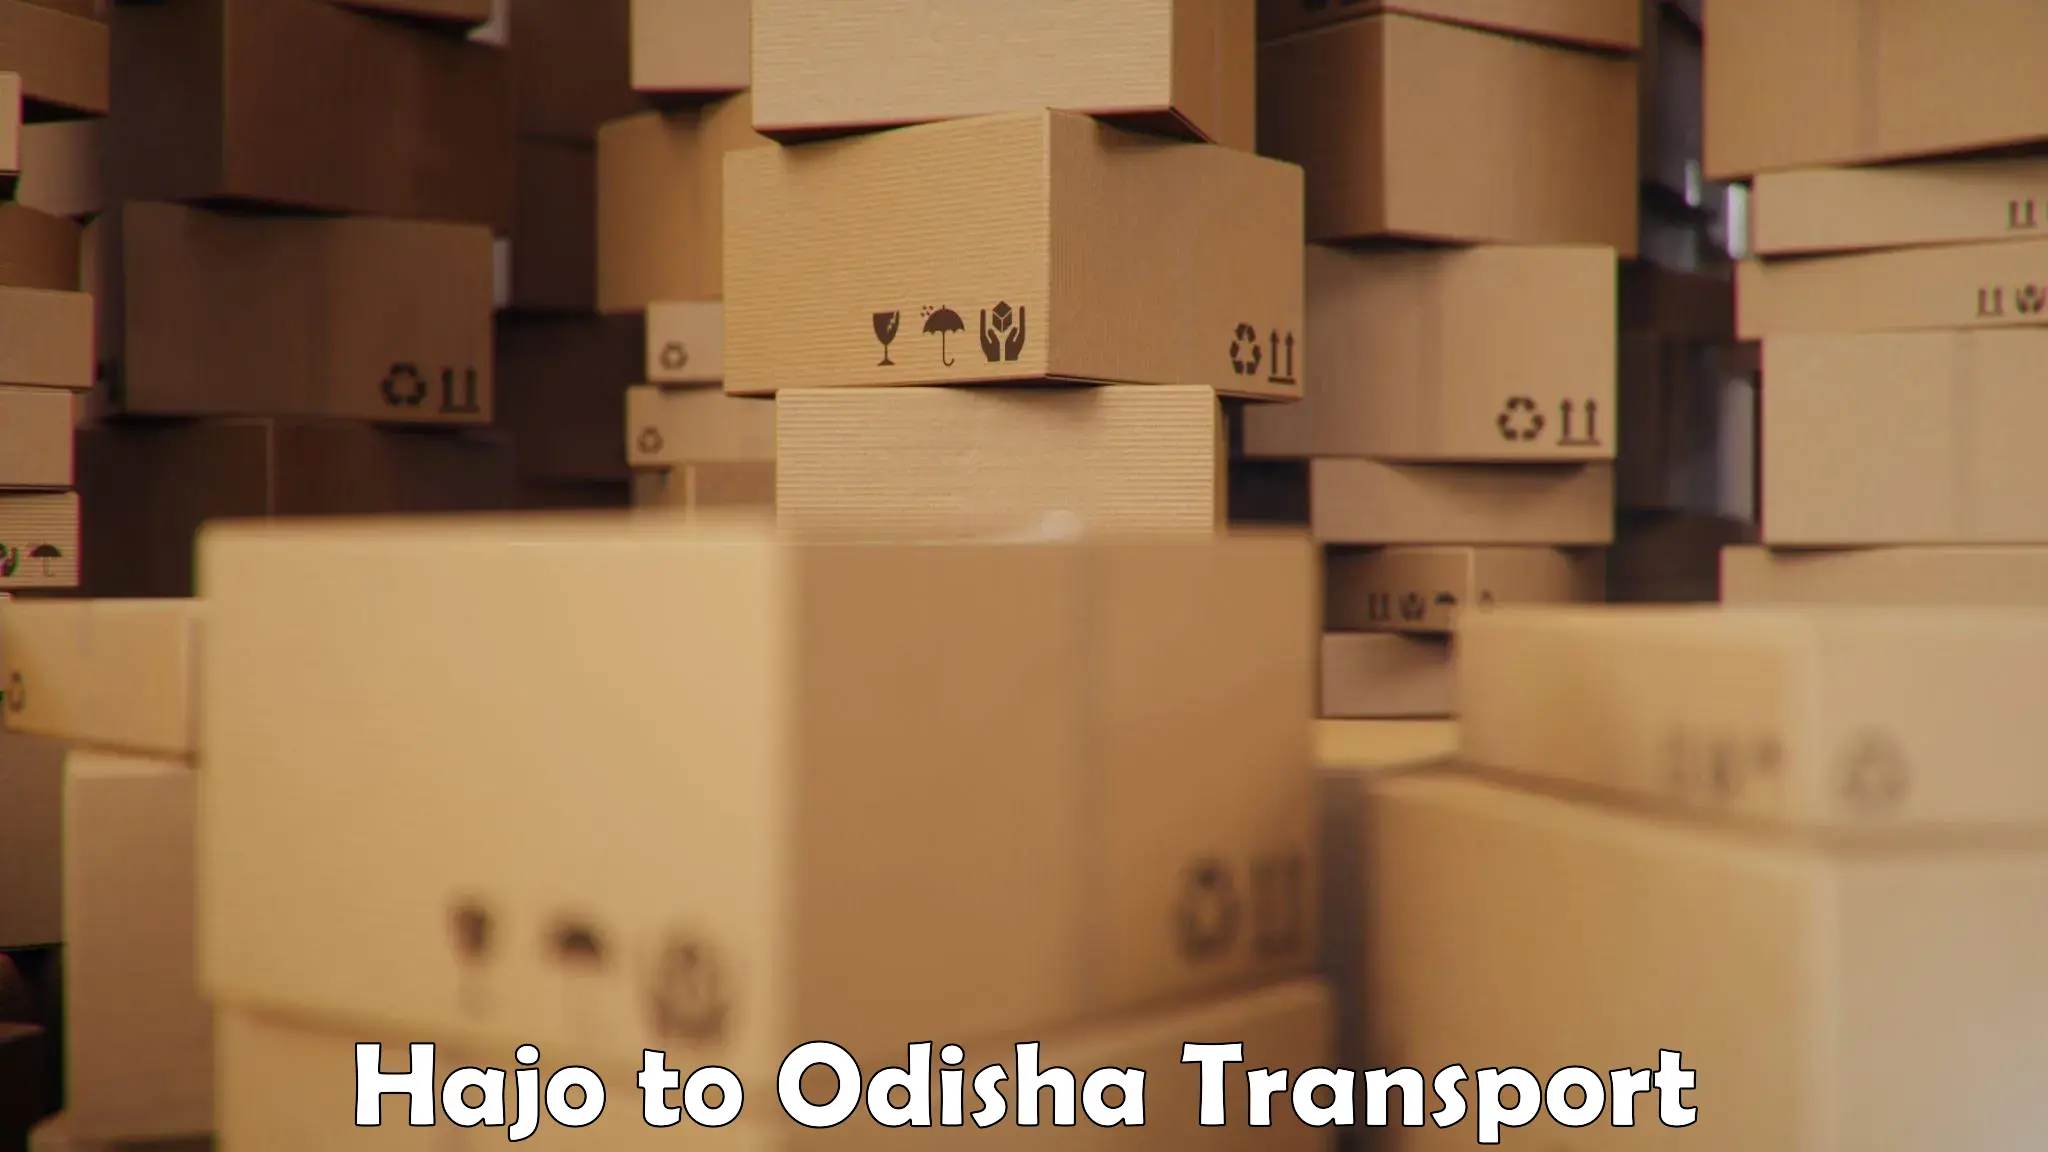 Delivery service Hajo to Odisha